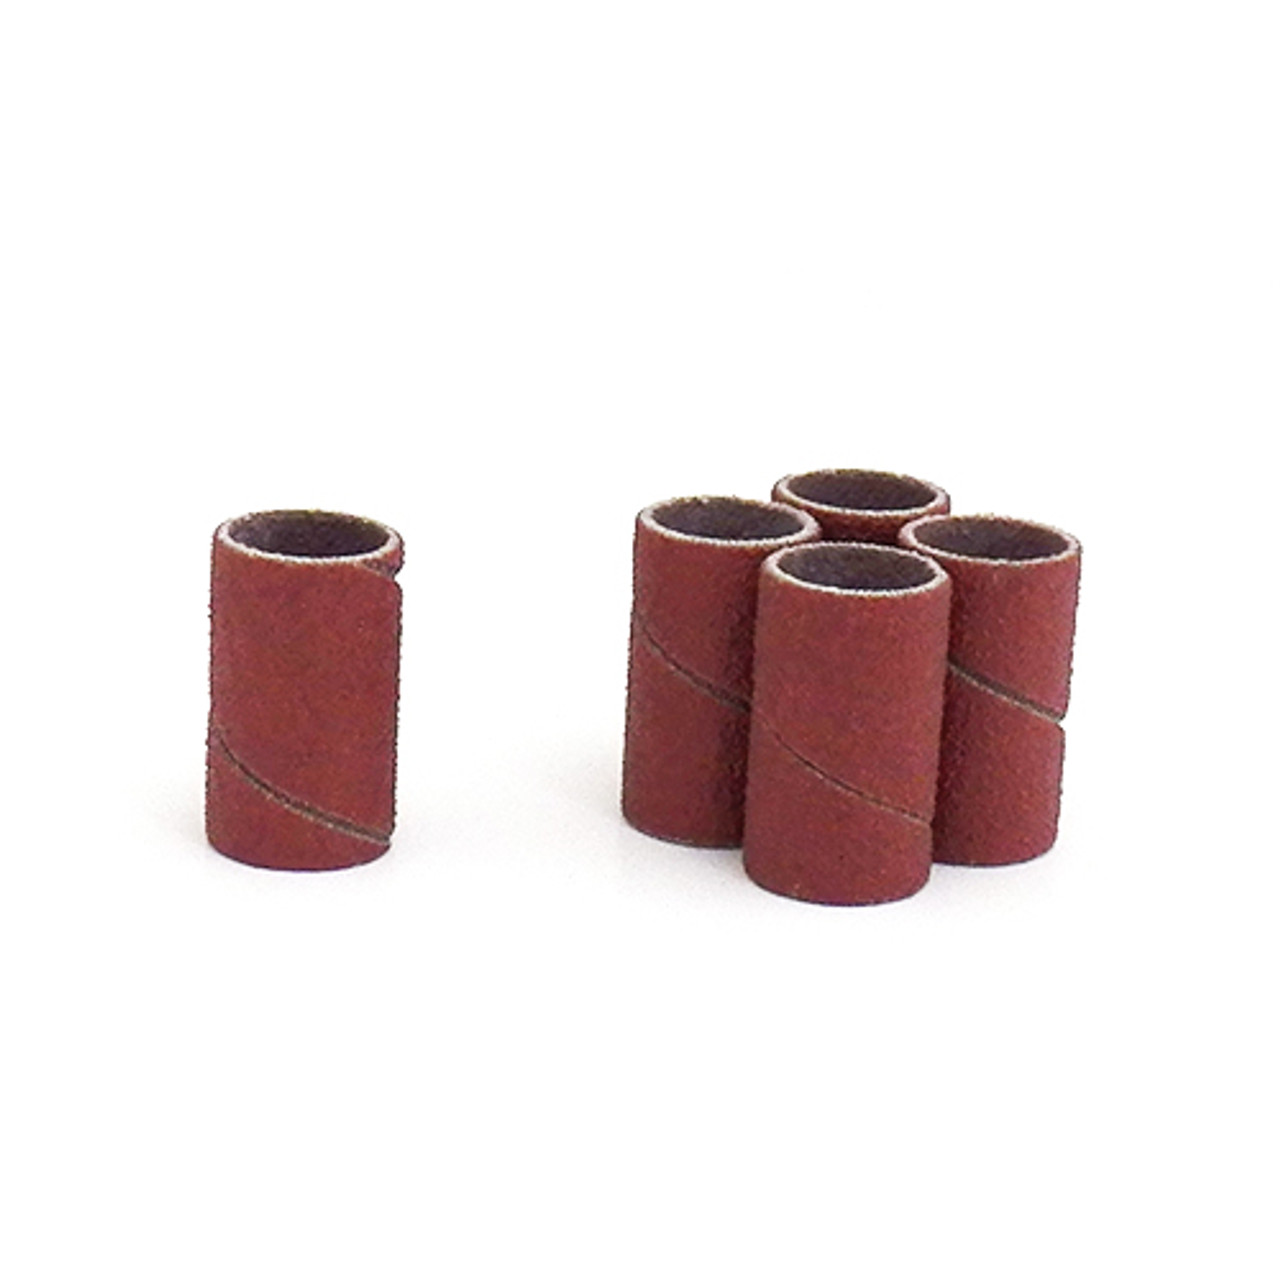 Klingspor Abrasives Aluminum Oxide Sanding Sleeves, 1/2"X 1" 150 Grit, 5pk